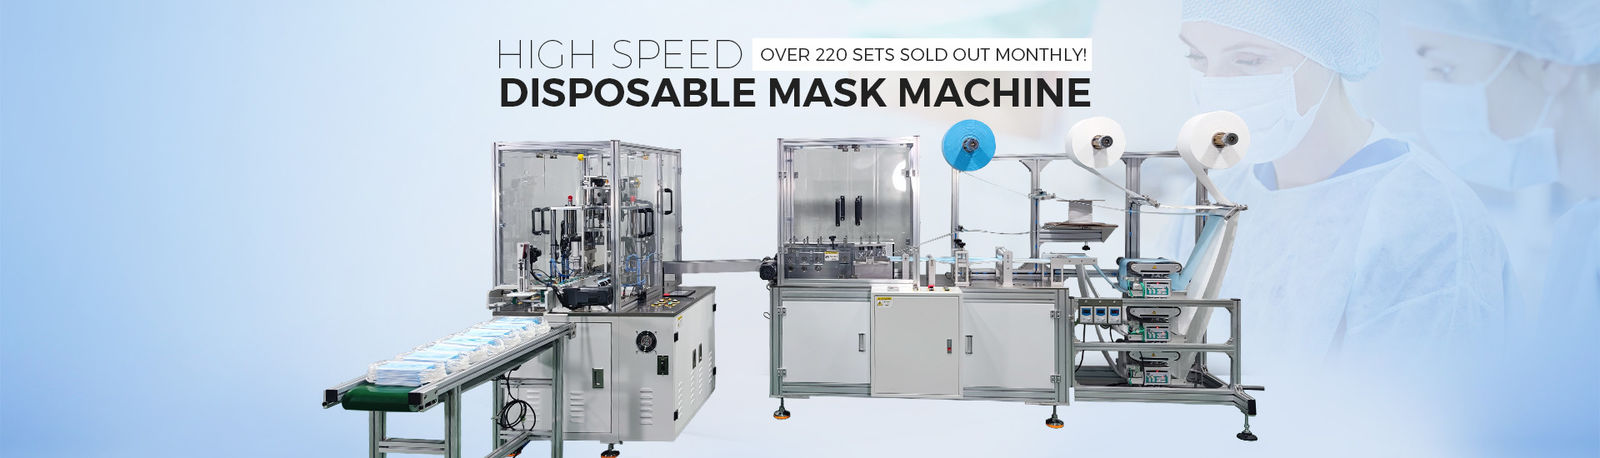 品質 機械を作るN95マスク 工場